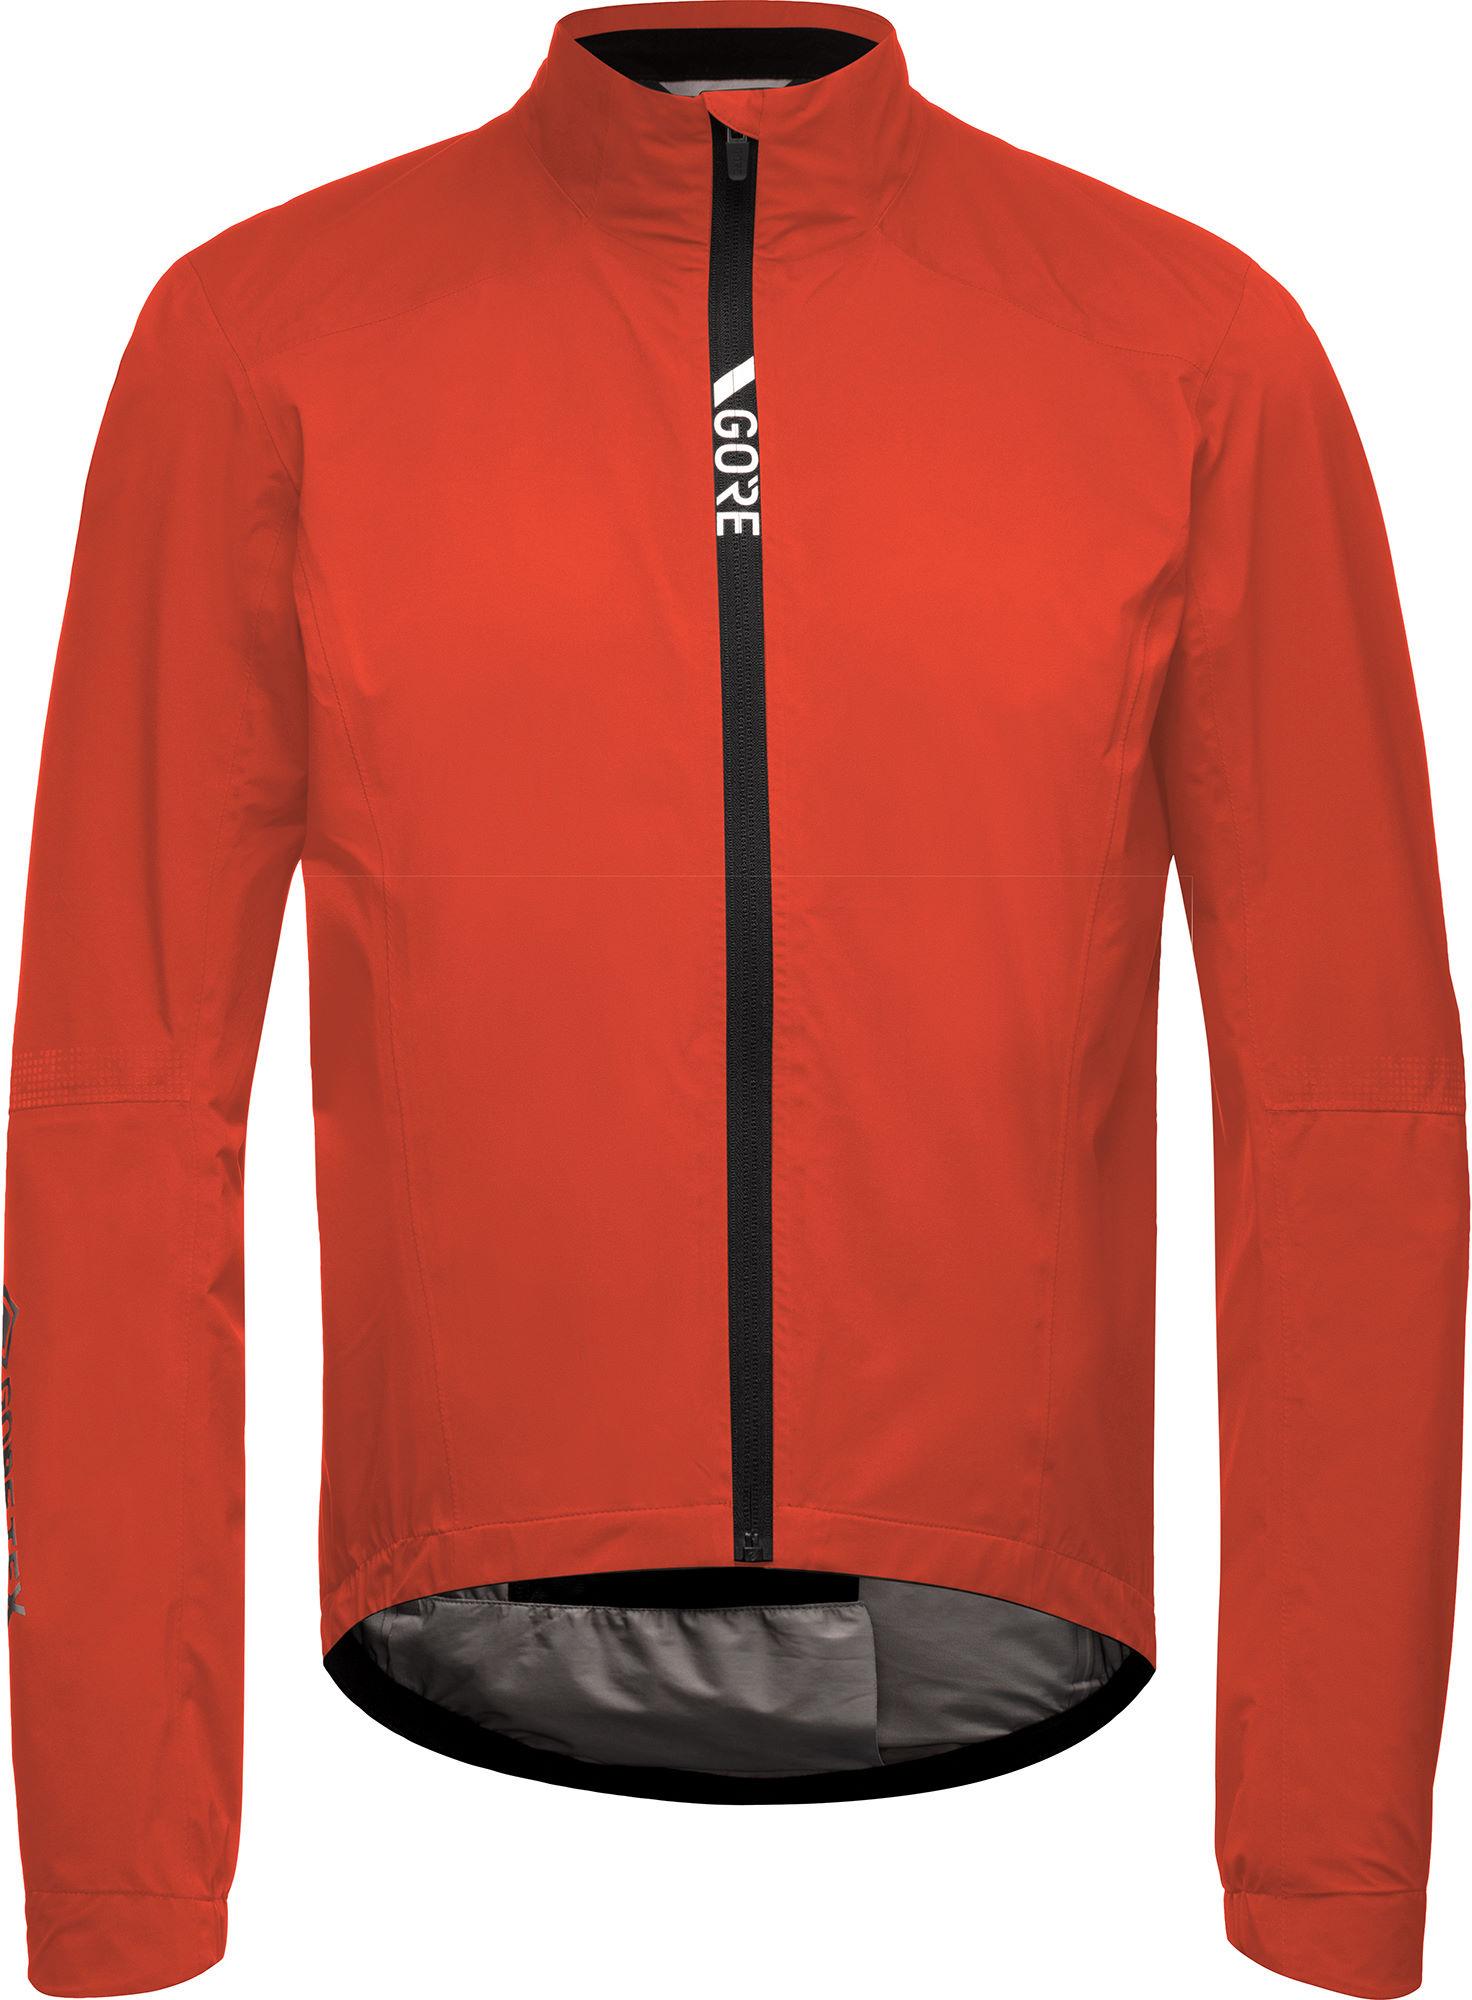 Gorewear Torrent Cycling Jacket - Fireball